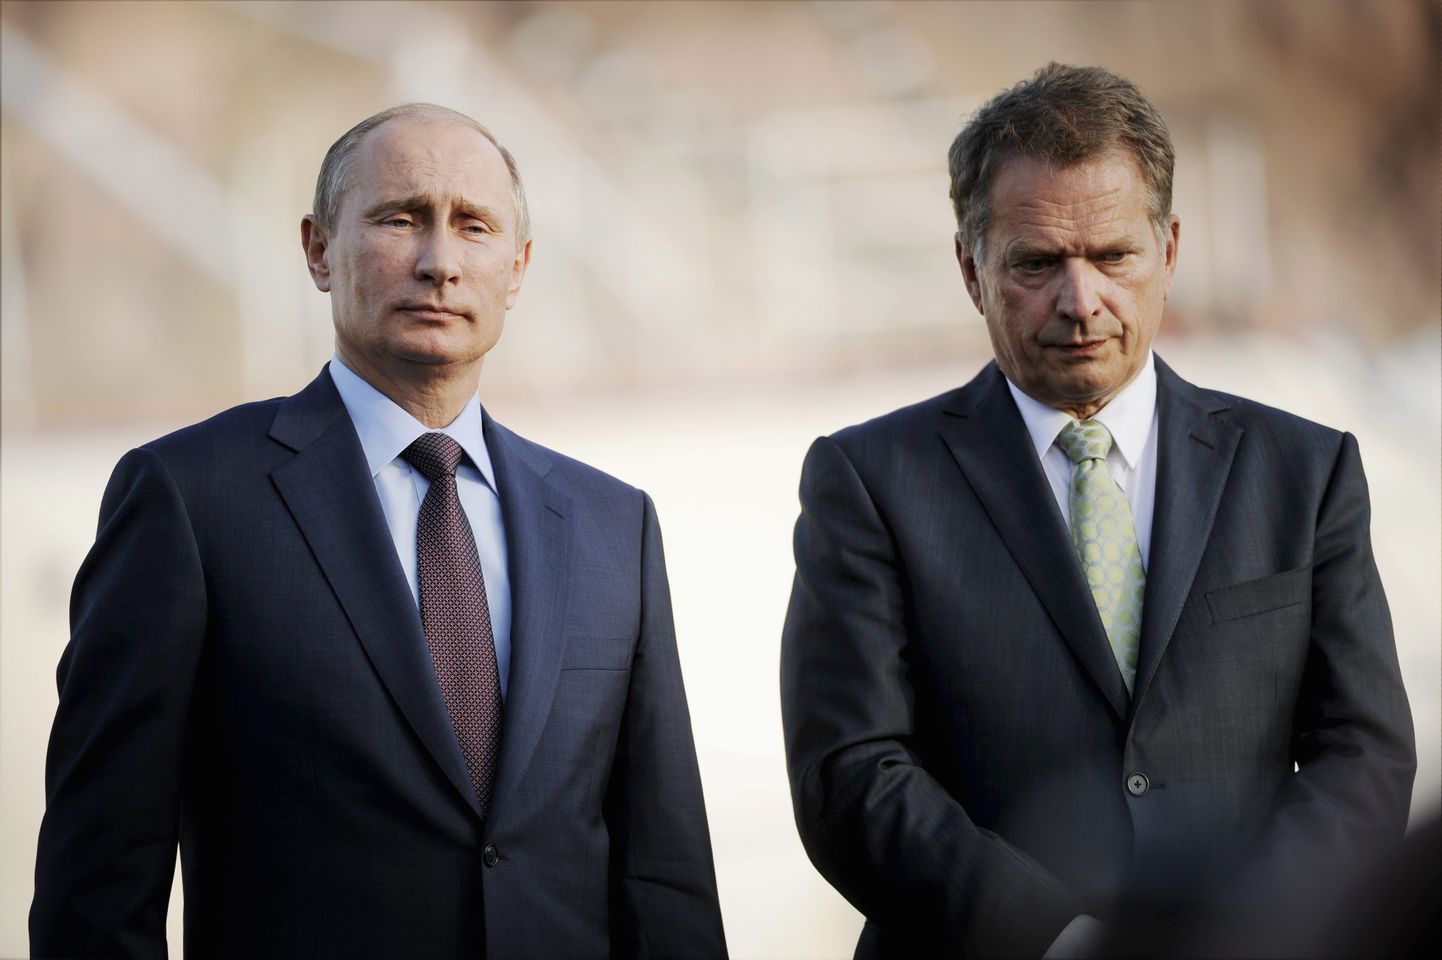 Soome president Sauli Niinistö ja Venemaa president Vladimir Putin kohtusid 25. juunil 2013 Soomes Turus.